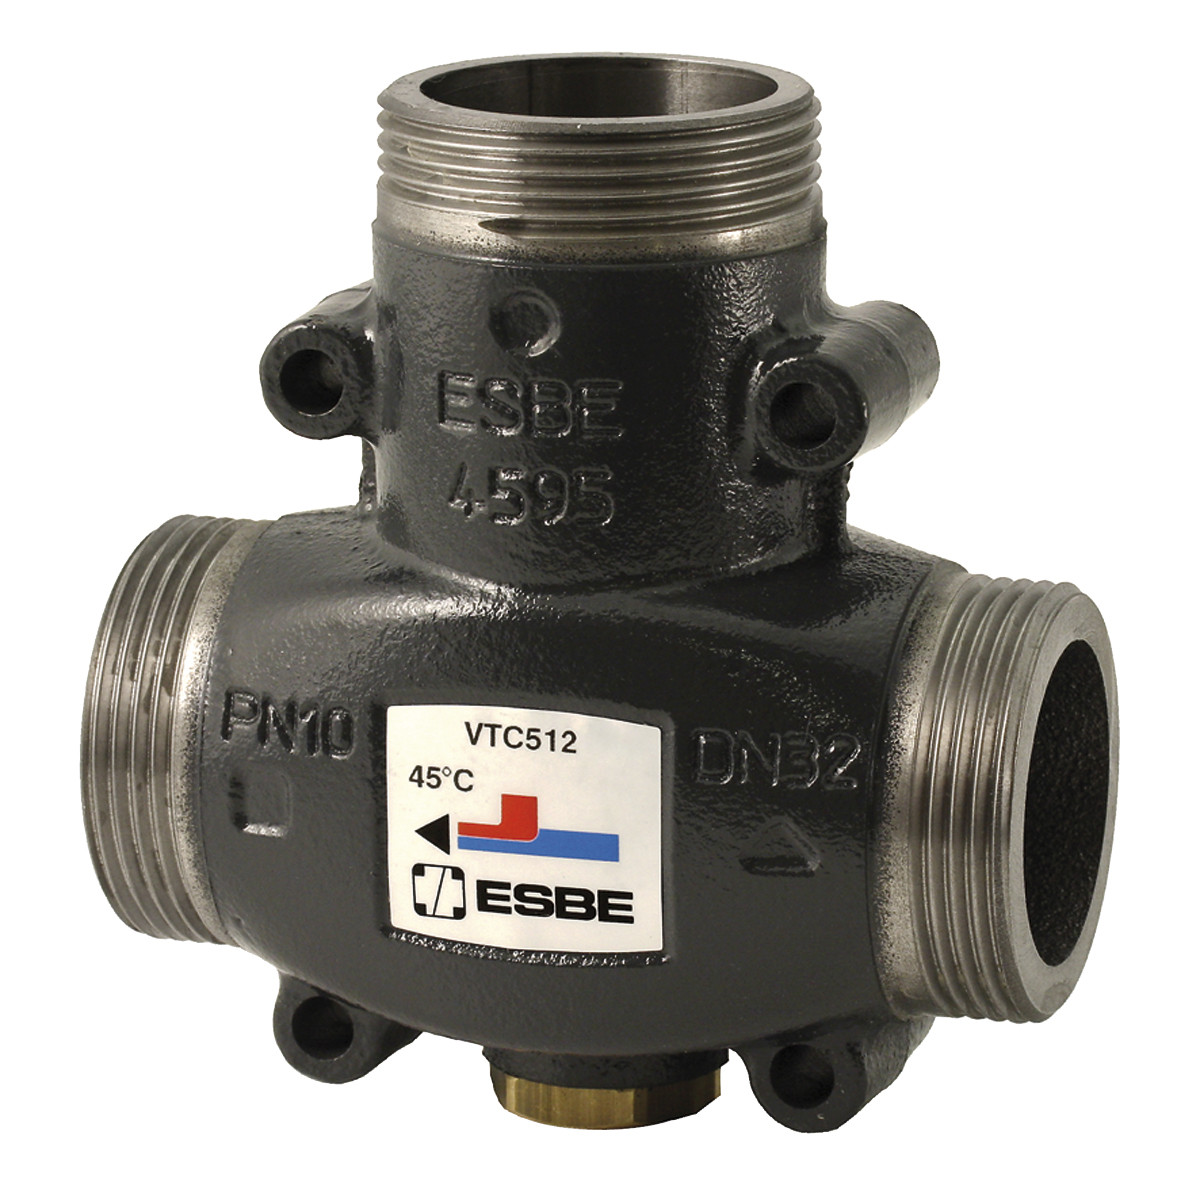 Термостатический смесительный клапан ESBE VTC 512 50°C G 1 1/4" артикул 51021500